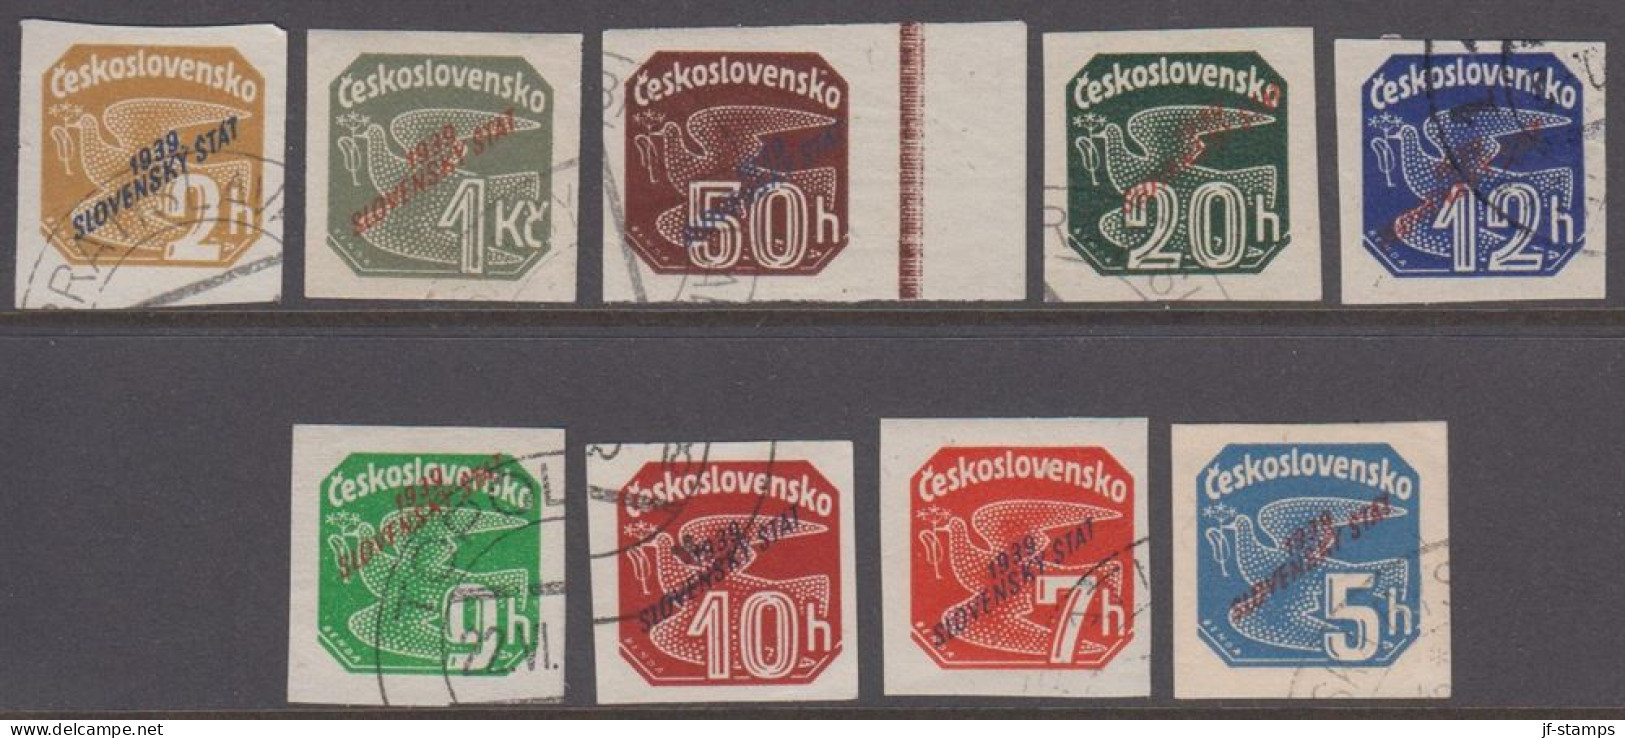 1939. SLOVENSKO 1939 / Slovenský štát On Newspaper Stamps. Complete Set Of 9 Stamps.  (Michel 26-34) - JF418434 - Gebraucht